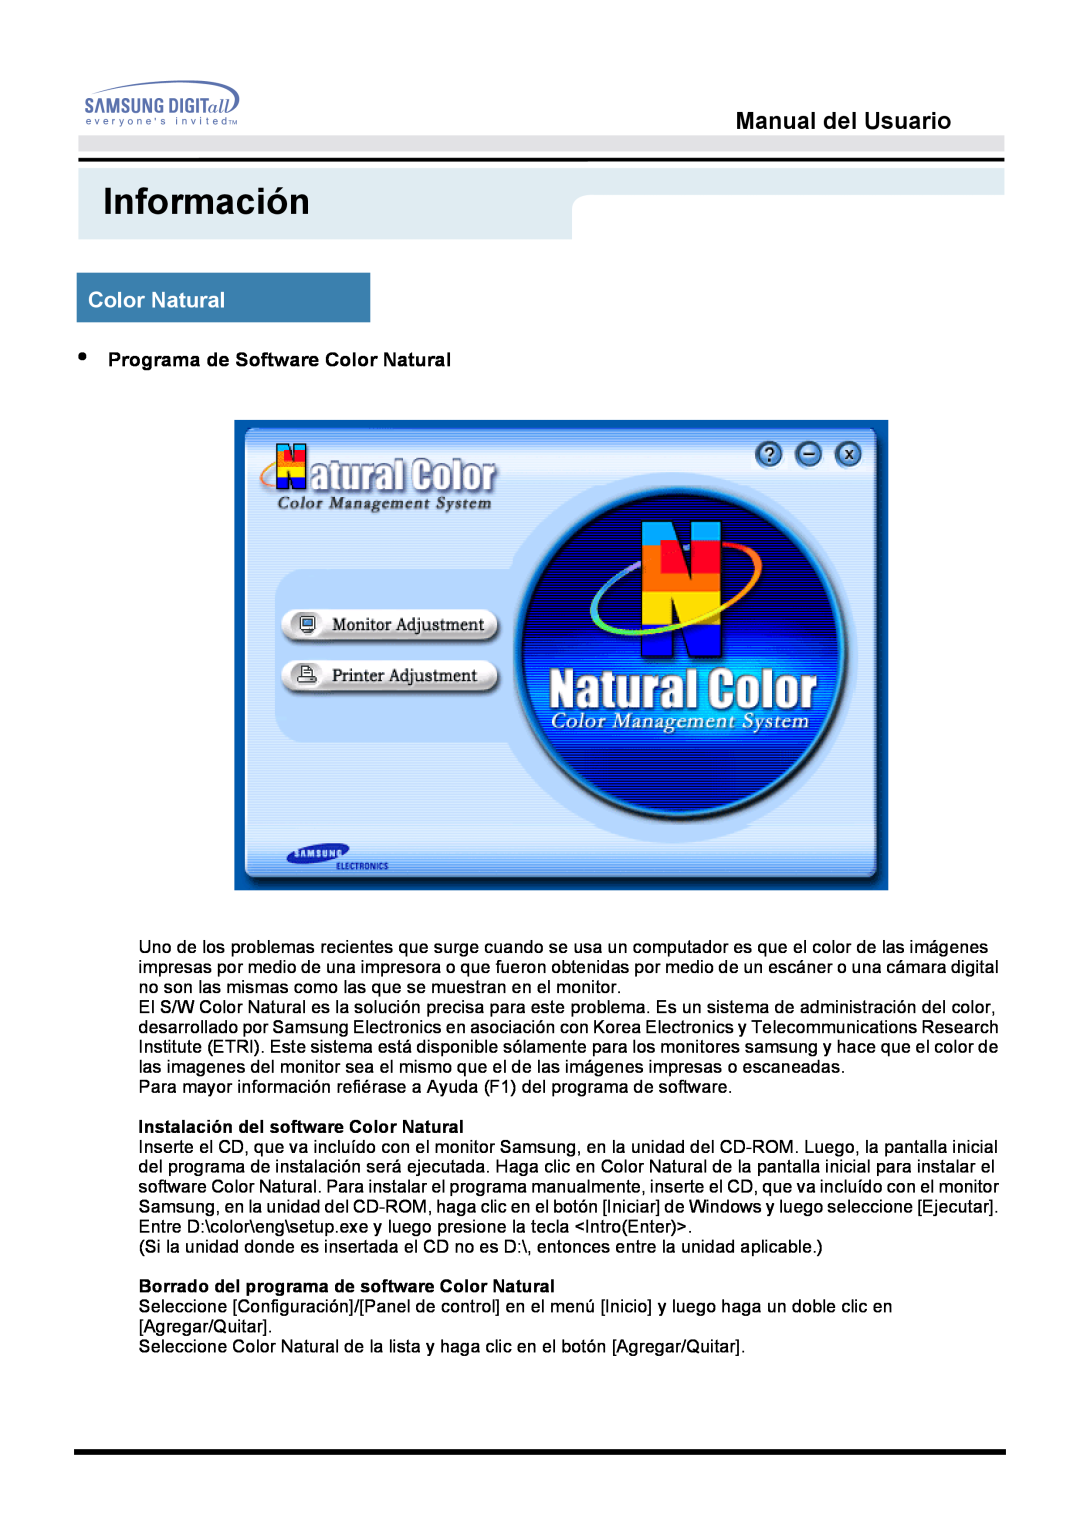 Samsung 153S manual Información, Manual del Usuario, Programa de Software Color Natural 